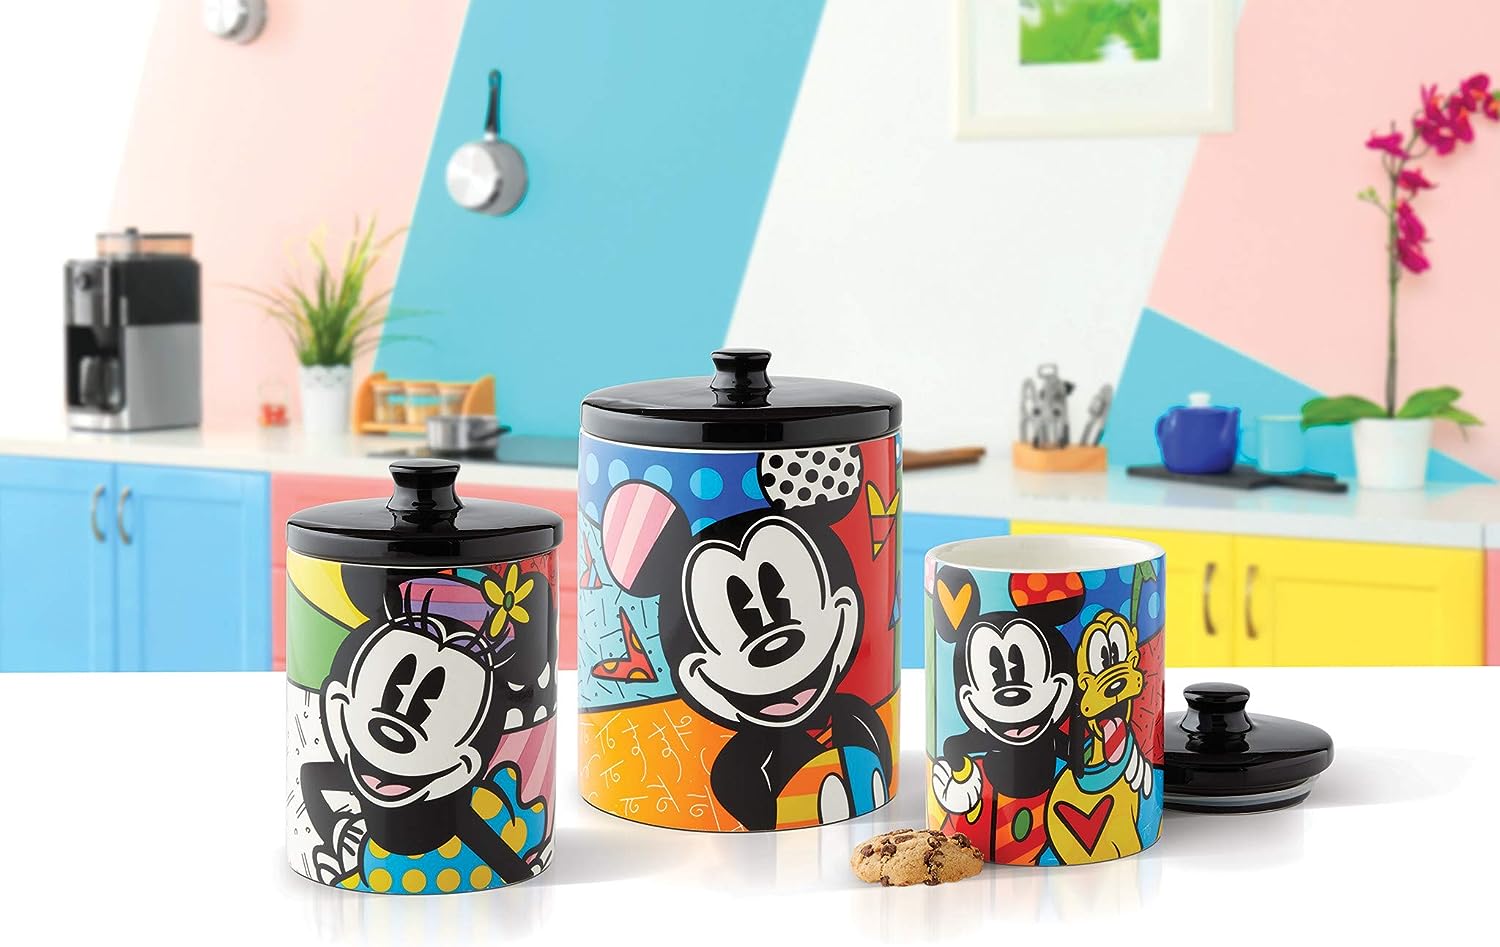 Minnie-Mouse-Keksdose-Disney-by-Britto-berlindeluxe-miiniemaus-deckel-groß-klein-tisch